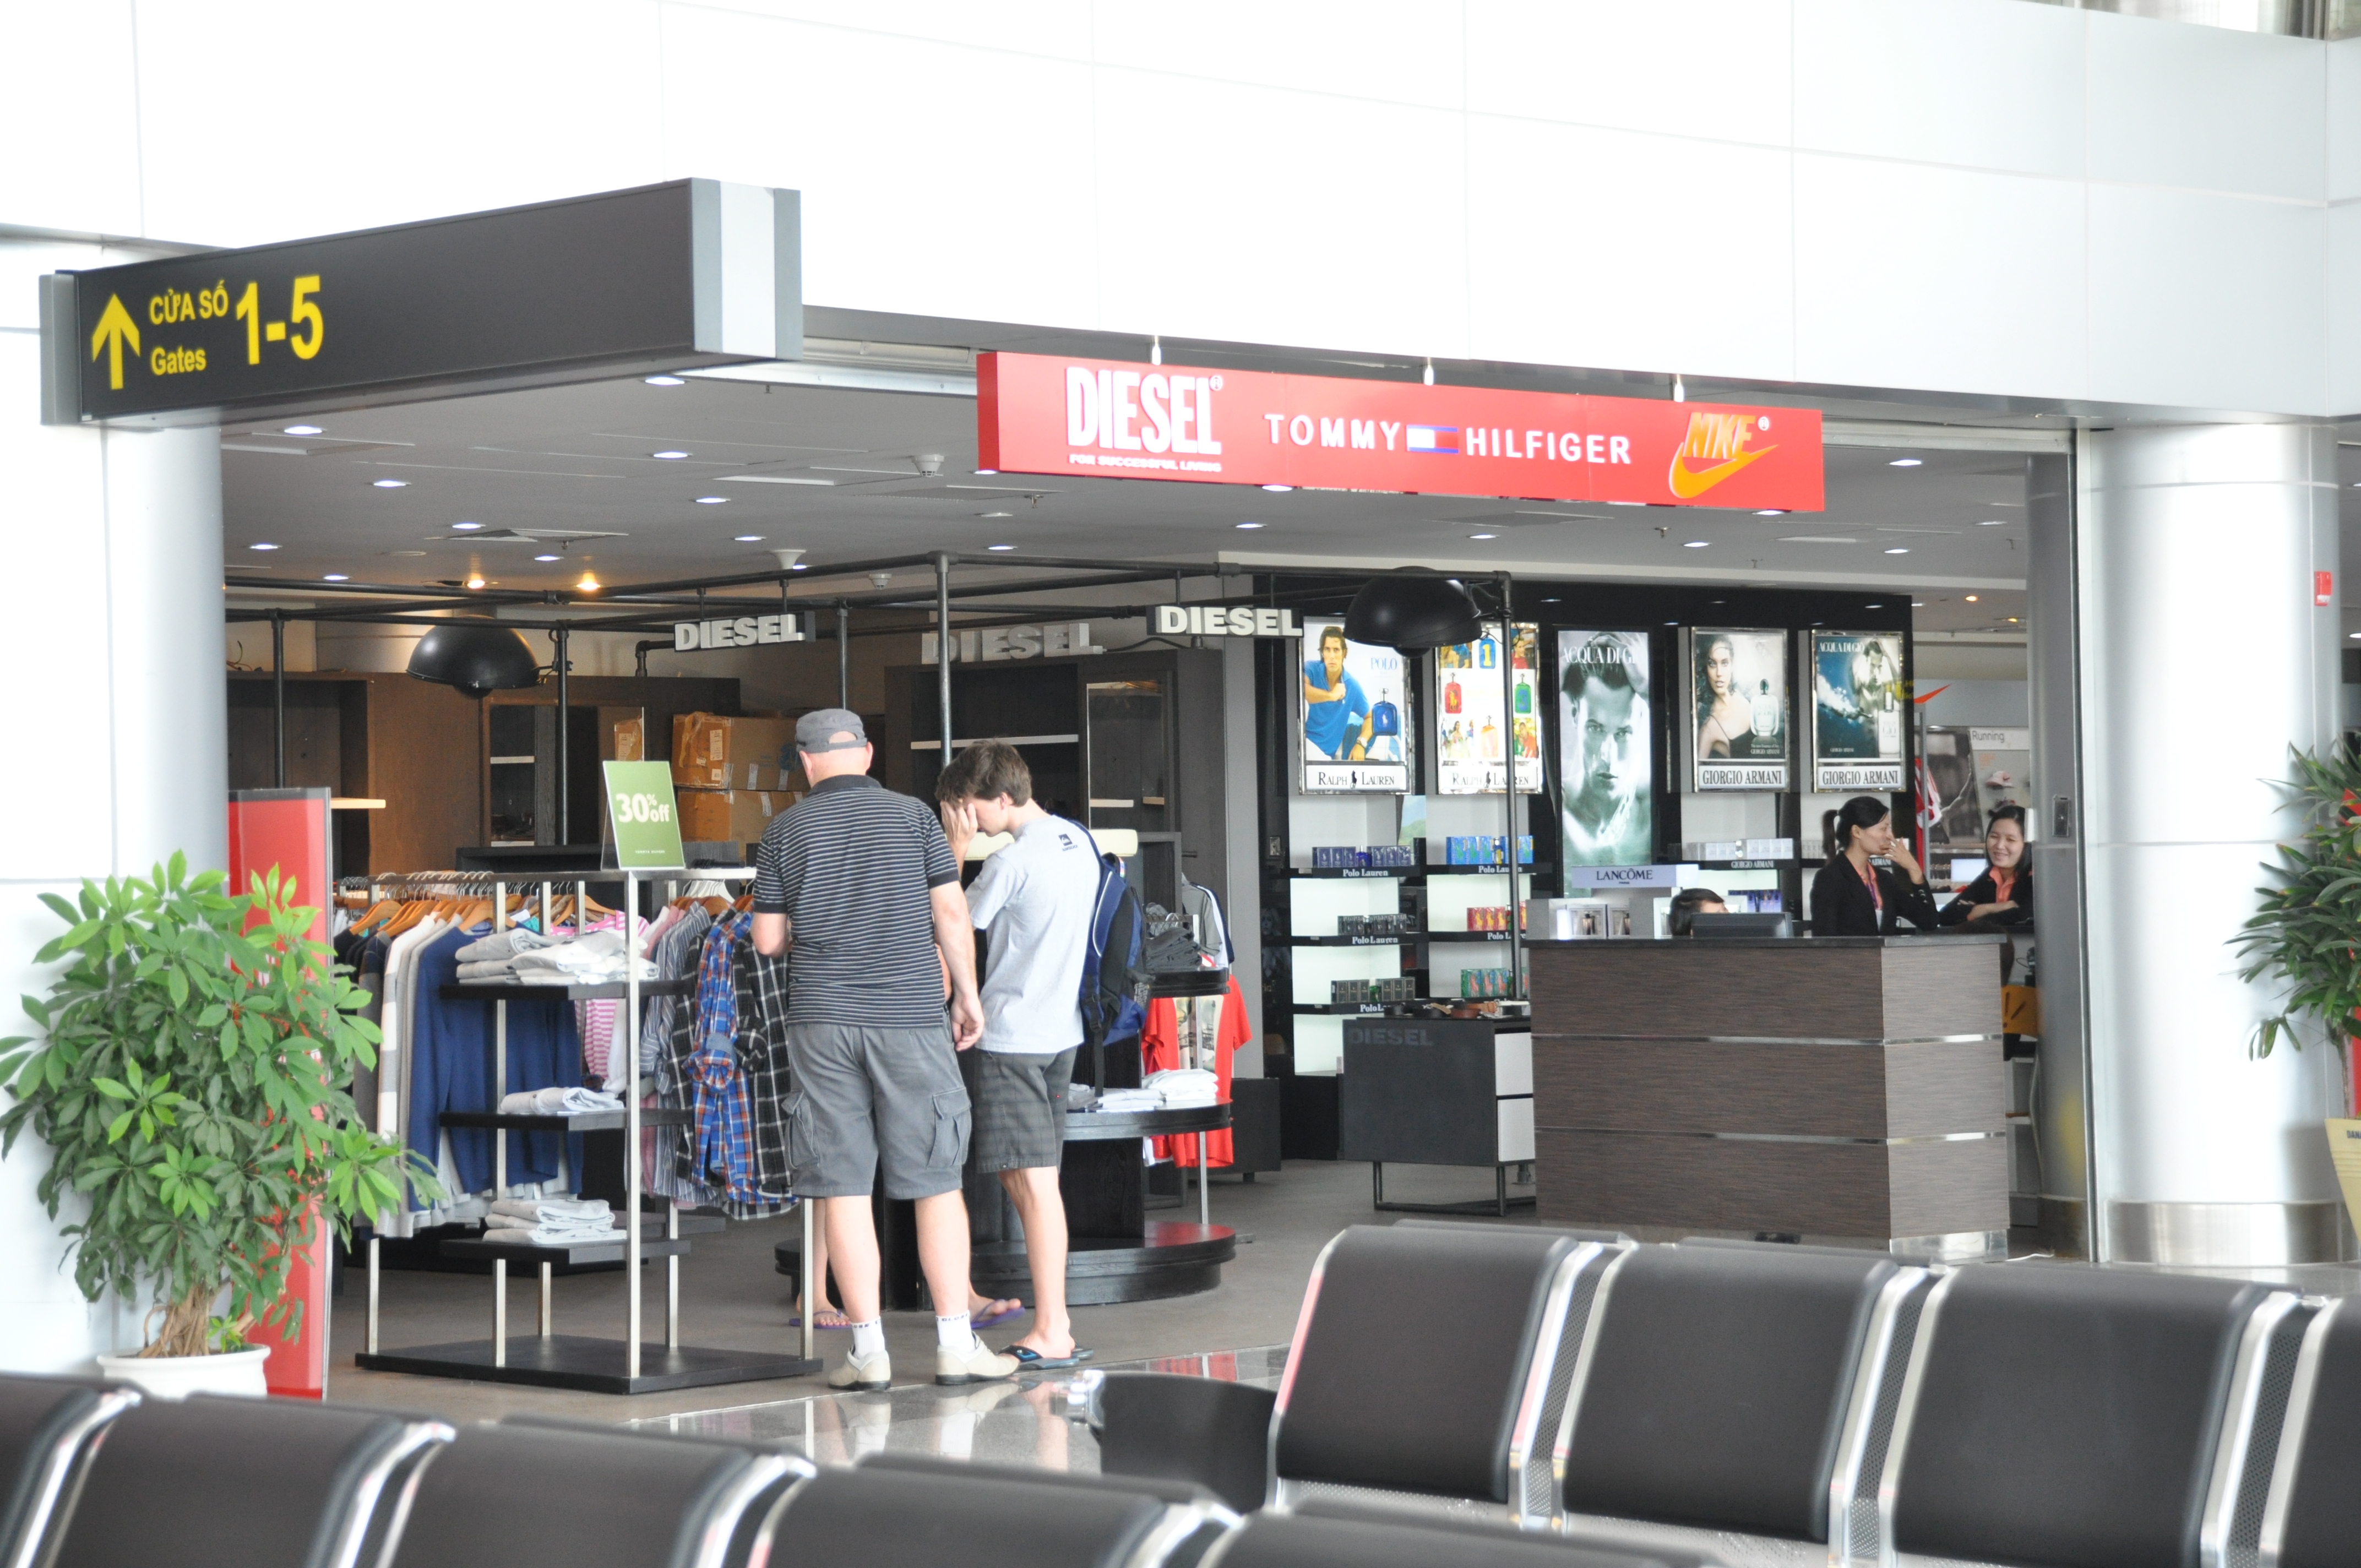 Sân bay quốc tế ở VN hiện chỉ có hoạt động mua sắm và ăn uống - Ảnh: Bích Chiêu